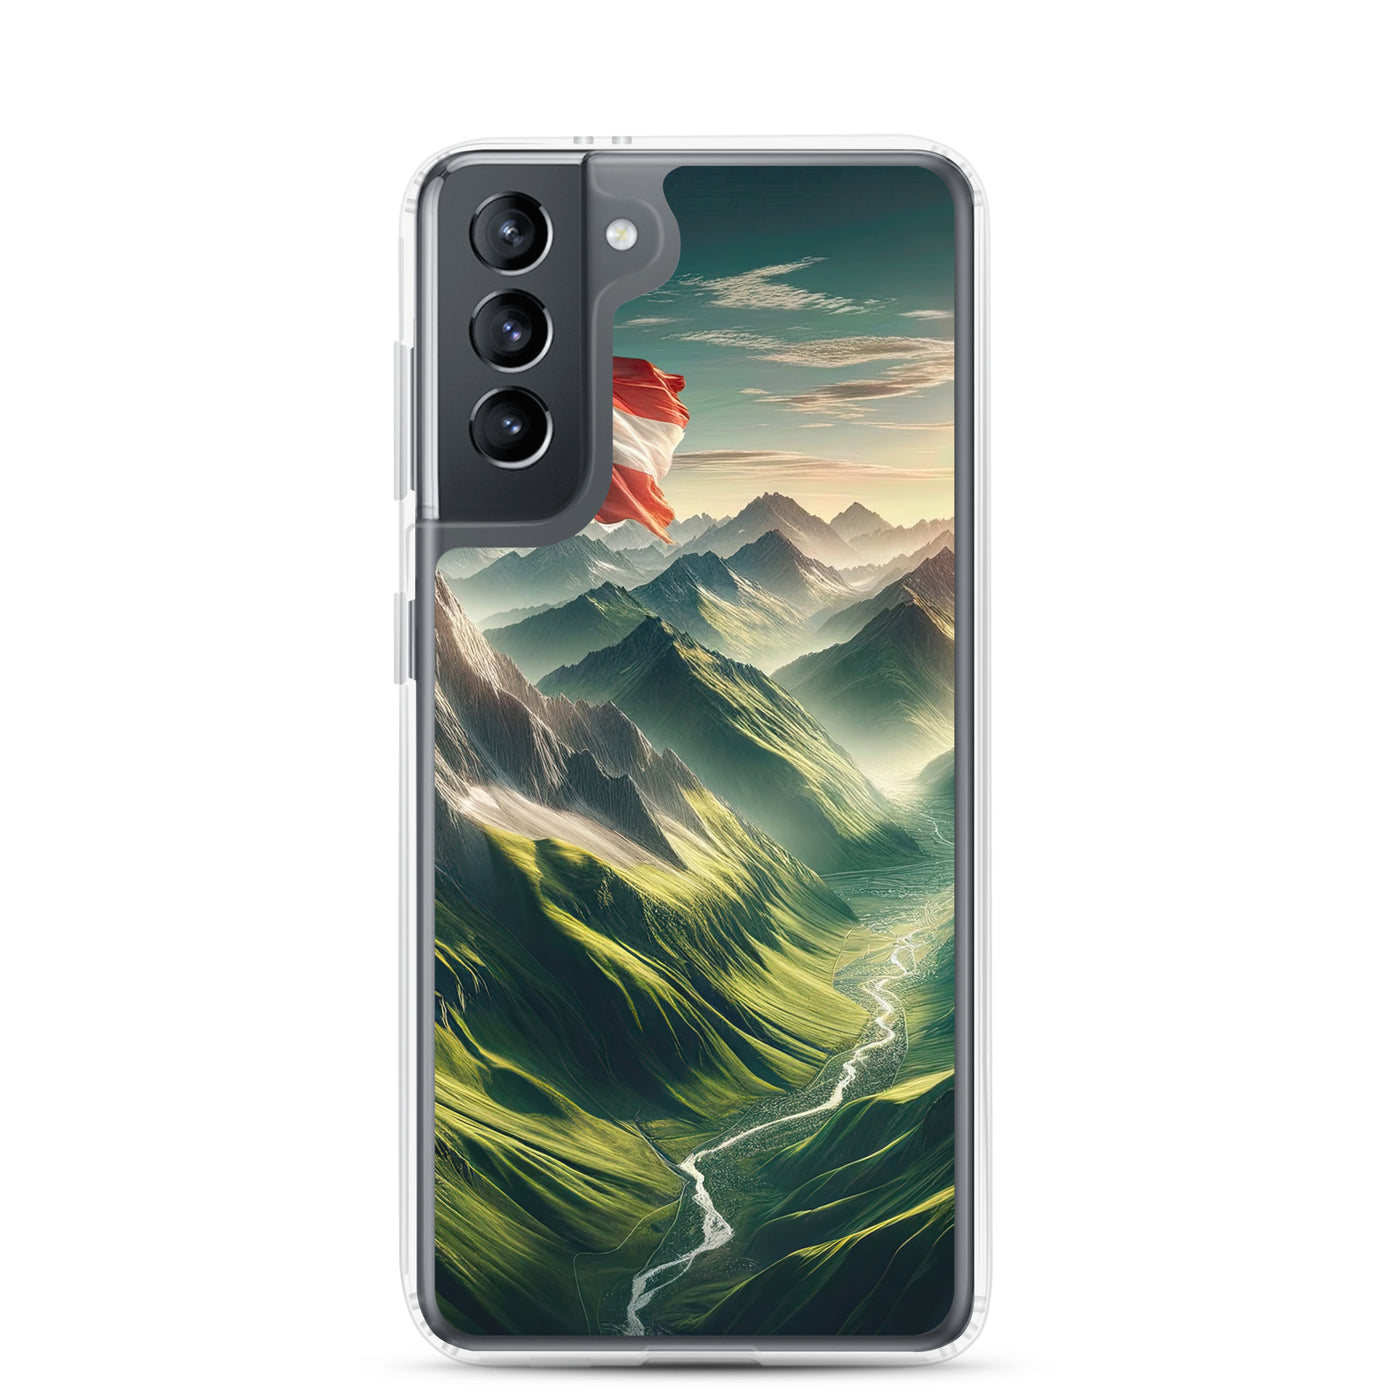 Alpen Gebirge: Fotorealistische Bergfläche mit Österreichischer Flagge - Samsung Schutzhülle (durchsichtig) berge xxx yyy zzz Samsung Galaxy S21